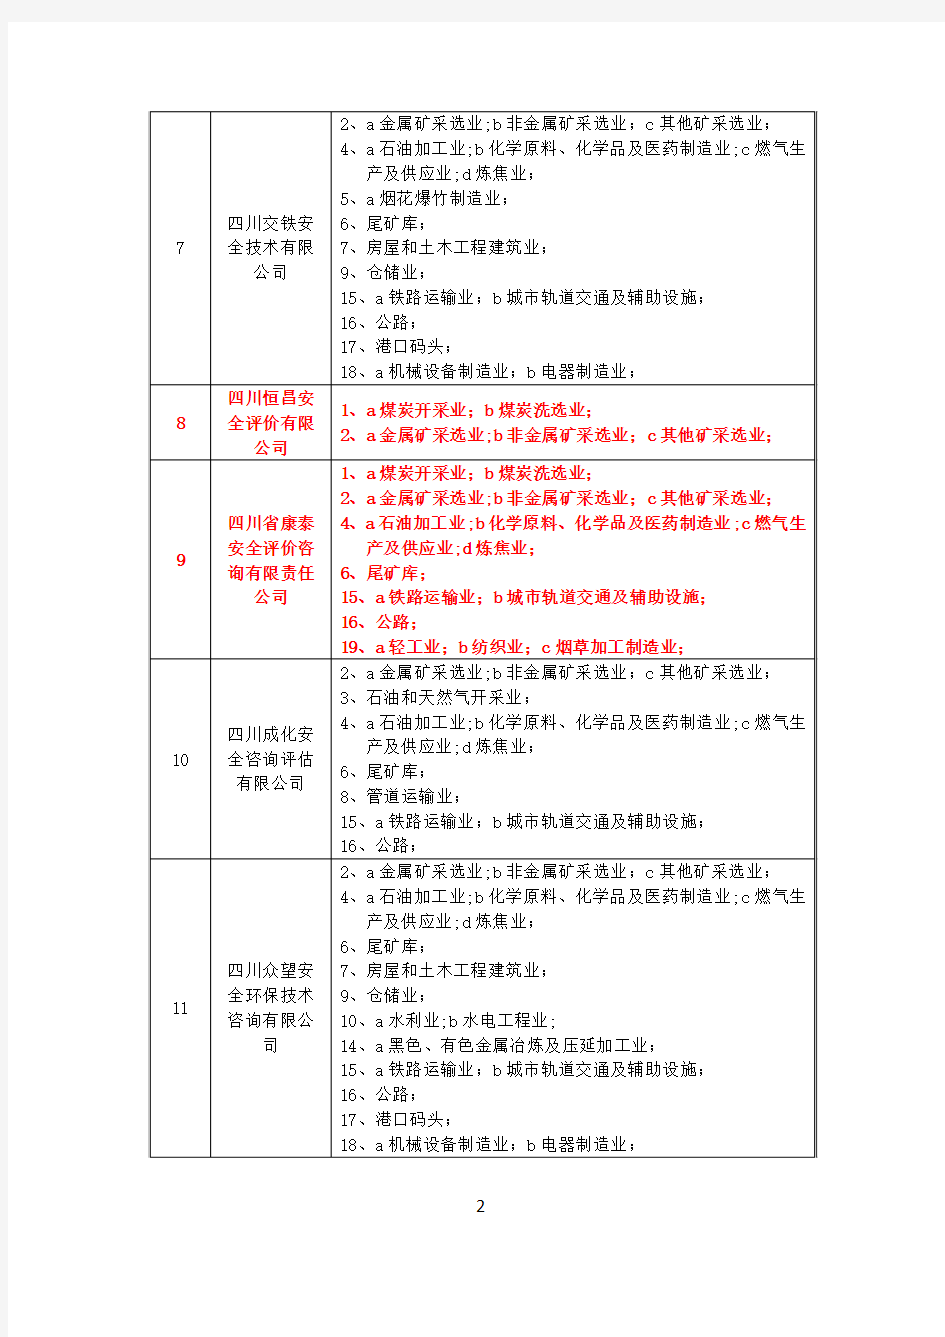 四川省安全评价机构乙级资质延续名单及业务范围